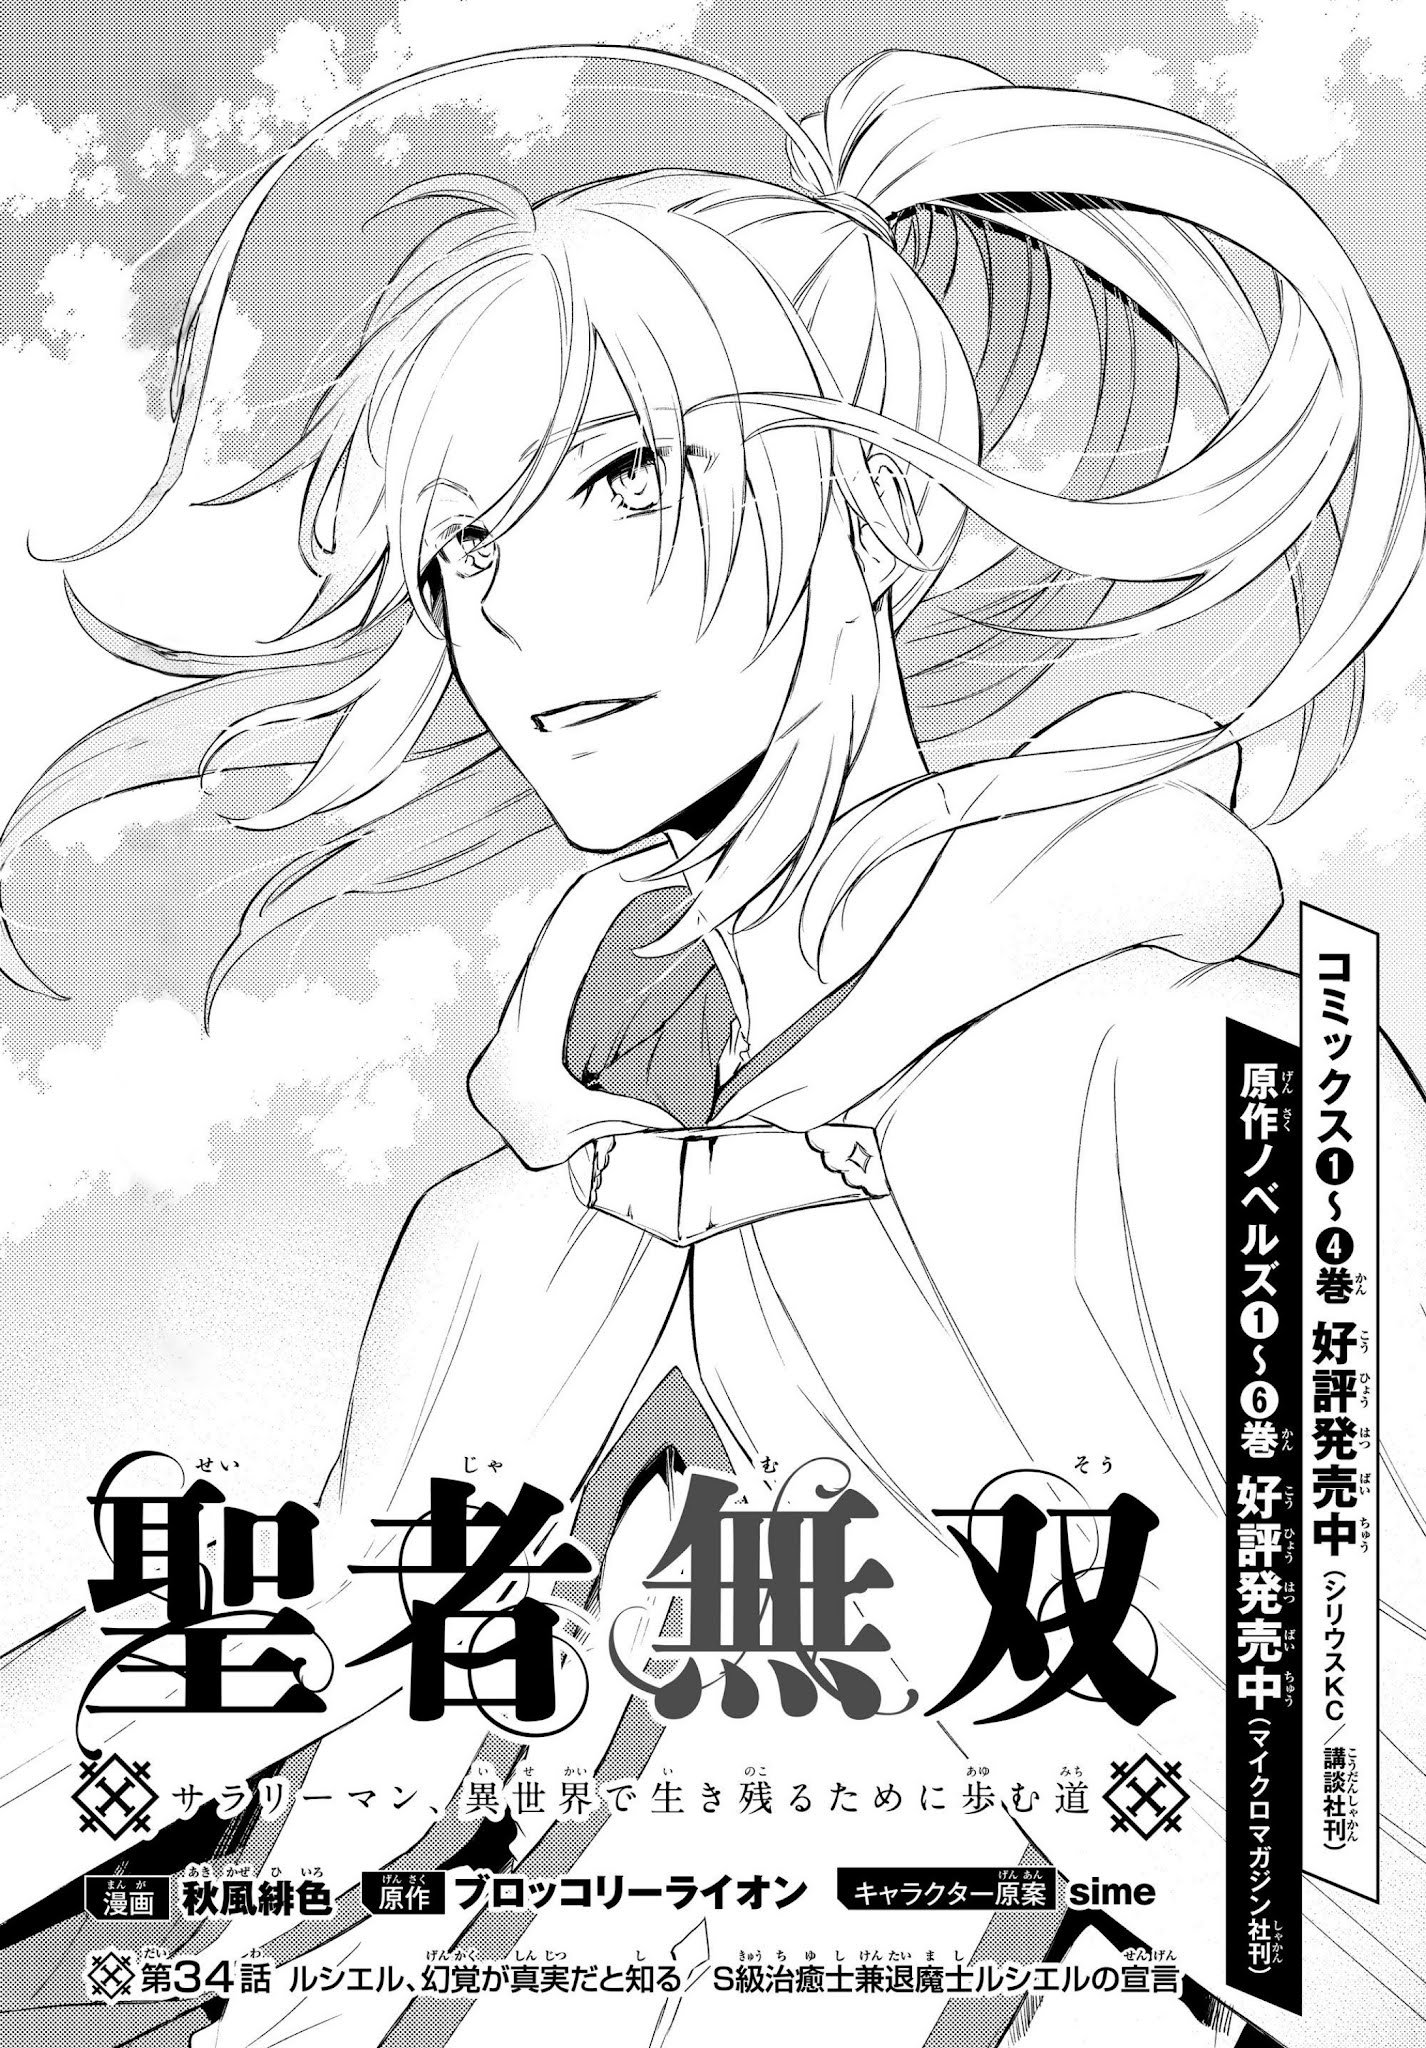 Seija Musou: Salaryman, Isekai De Ikinokoru Tame Ni Ayumu Michi - chapter 34 - #3